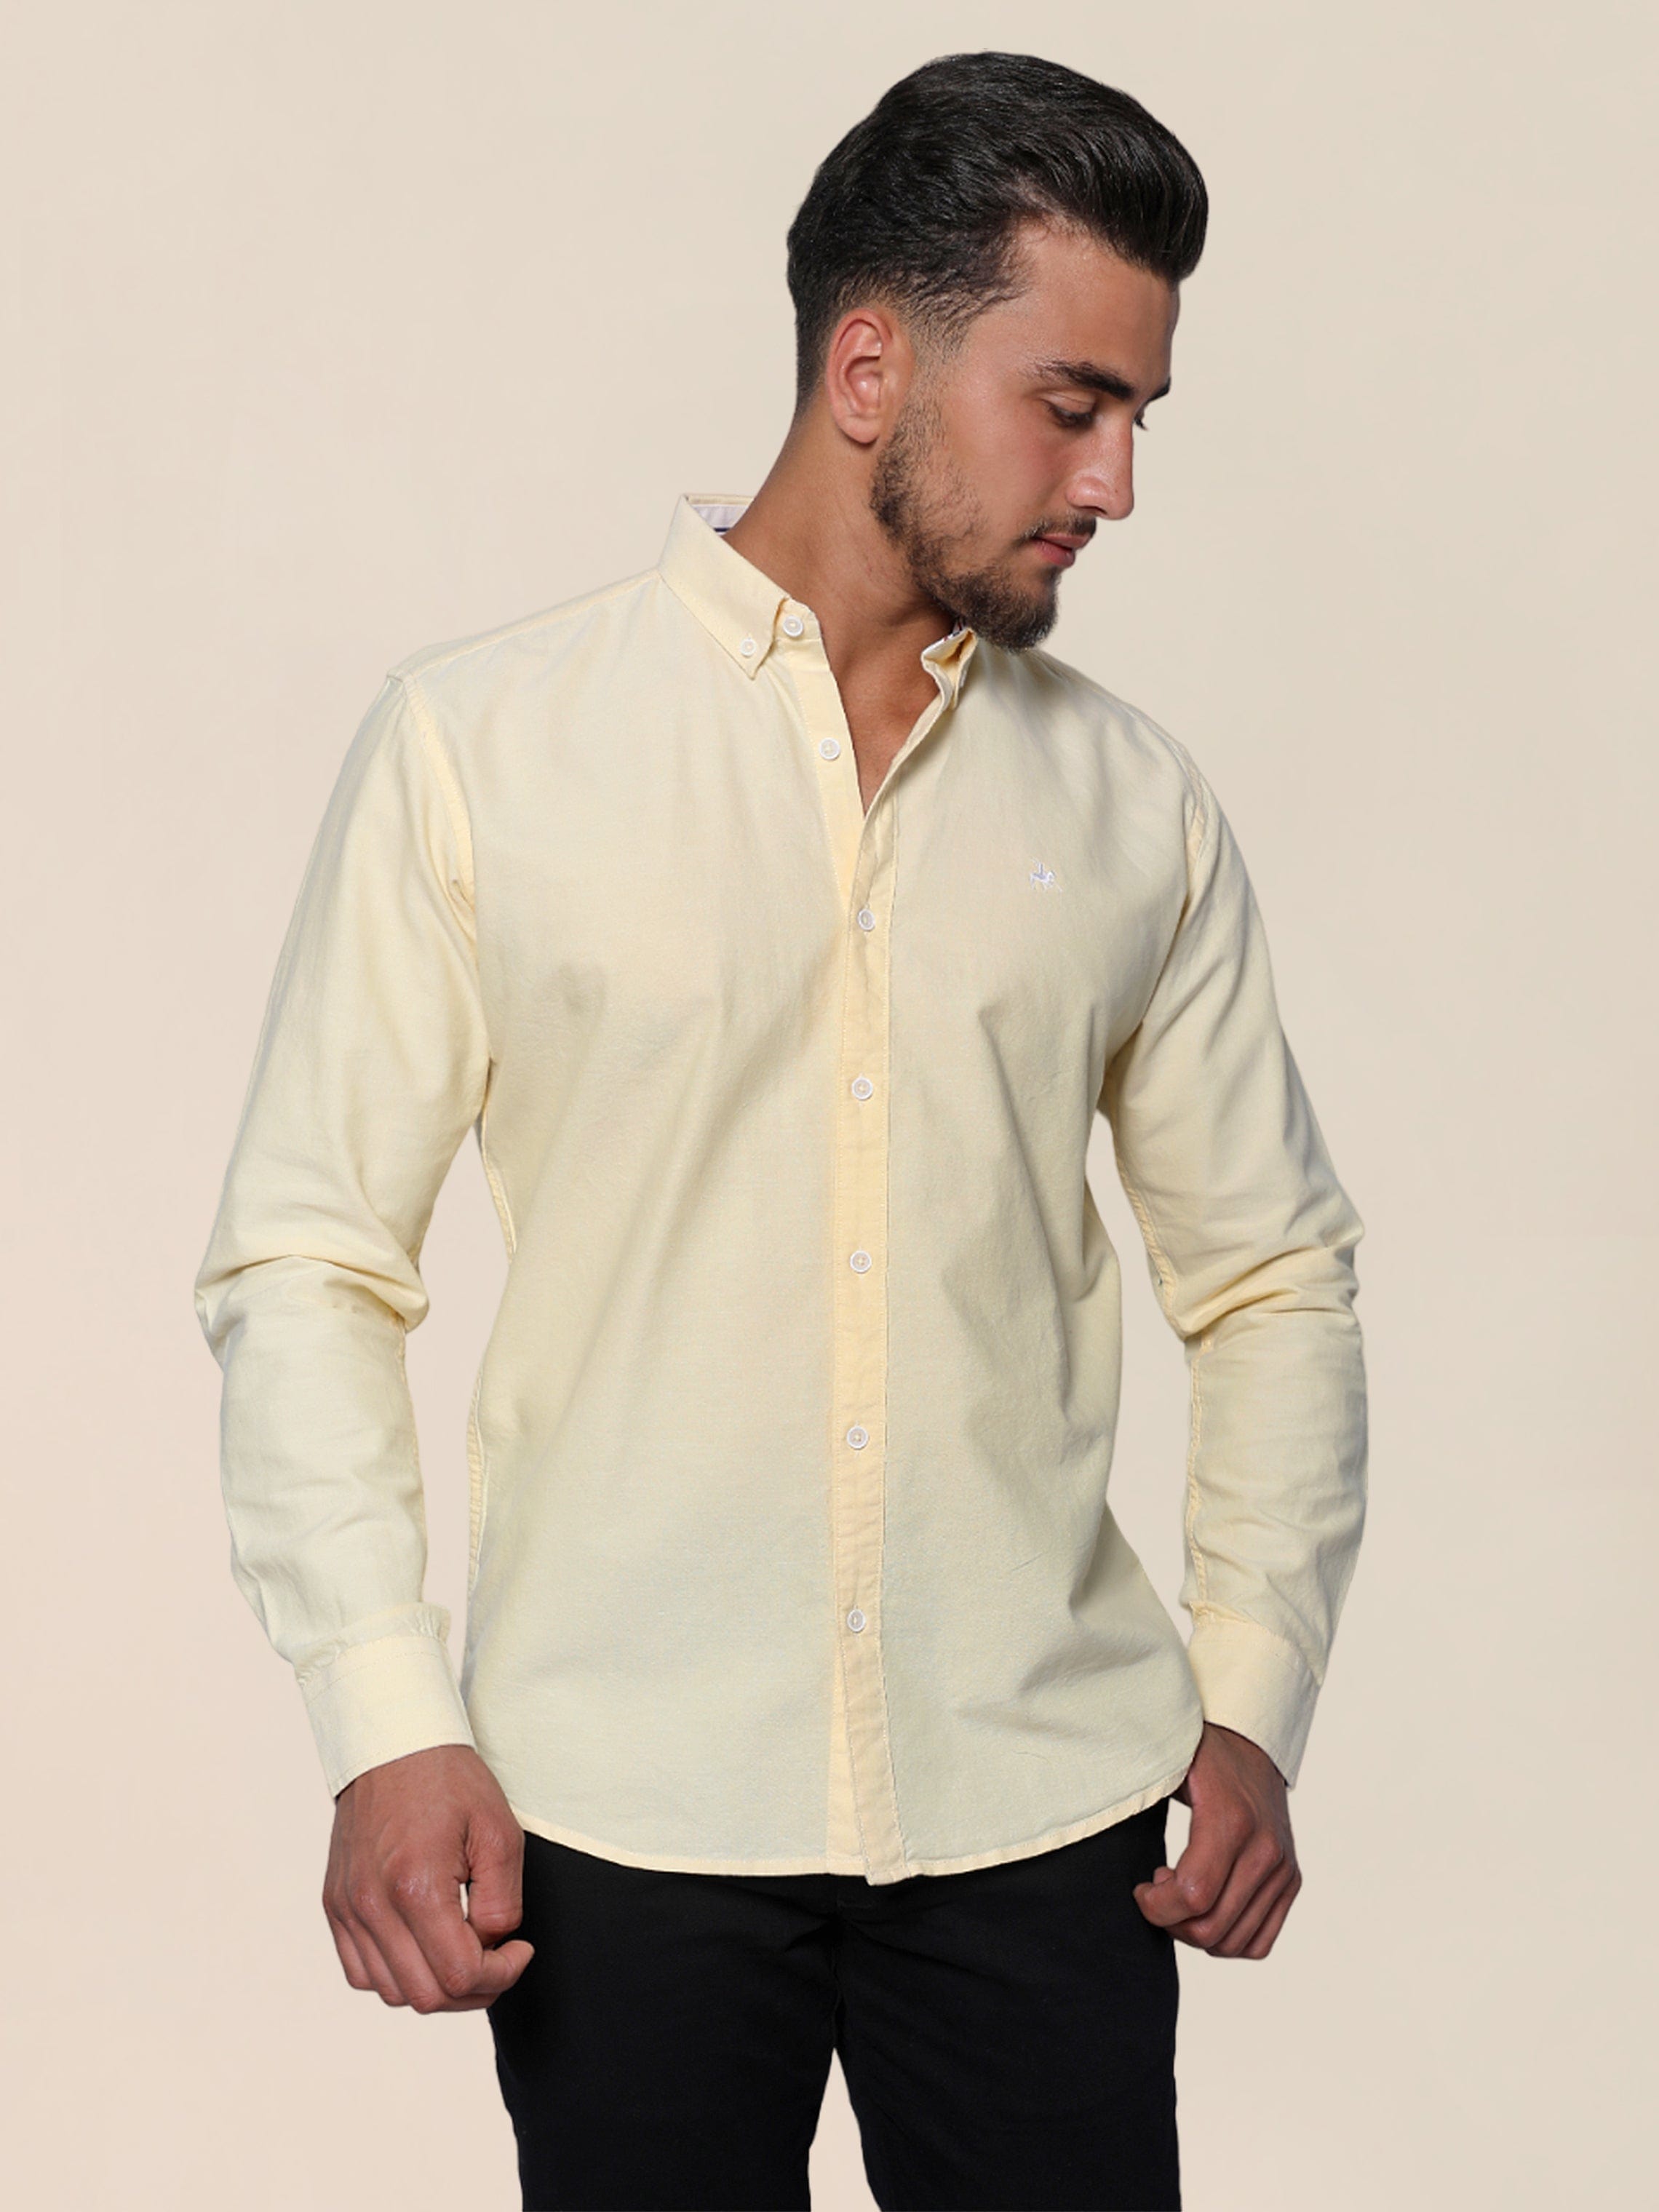 Men Lemon Yellow Oxford Shirt With Chest Contrast Emblem Design